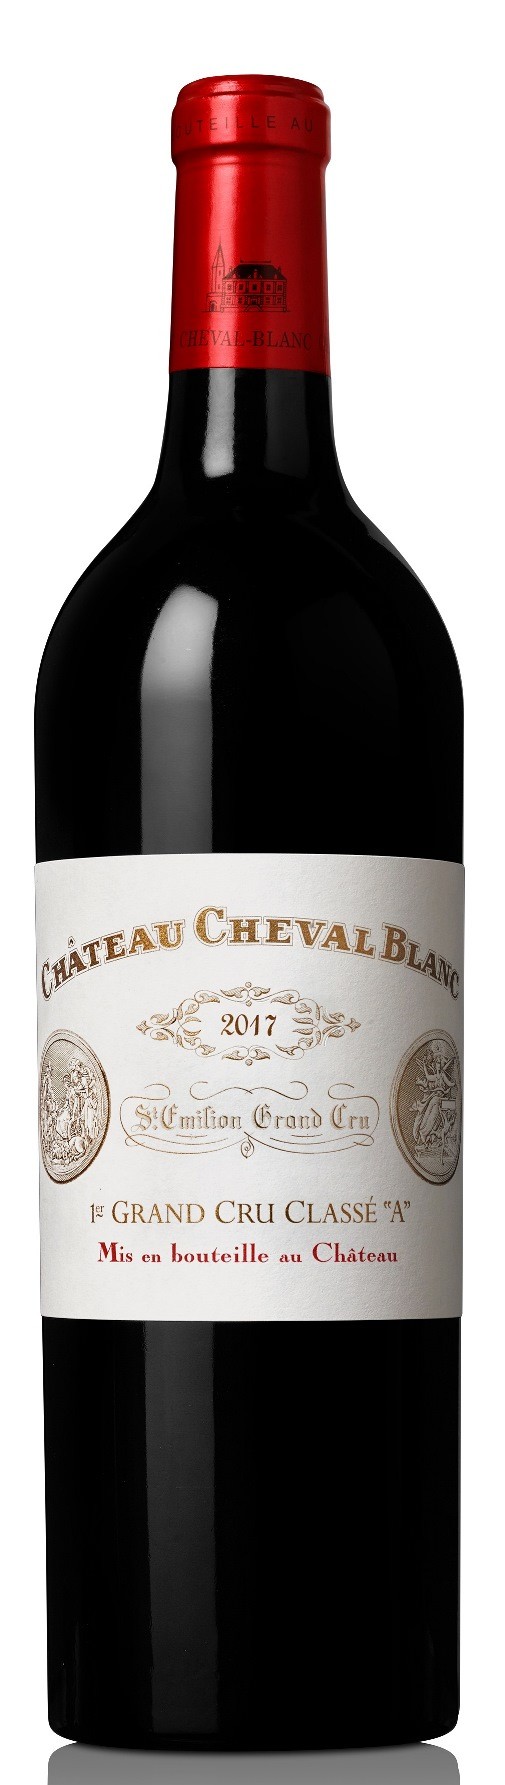 Chateau Cheval Blanc 2018, Saint Emilion